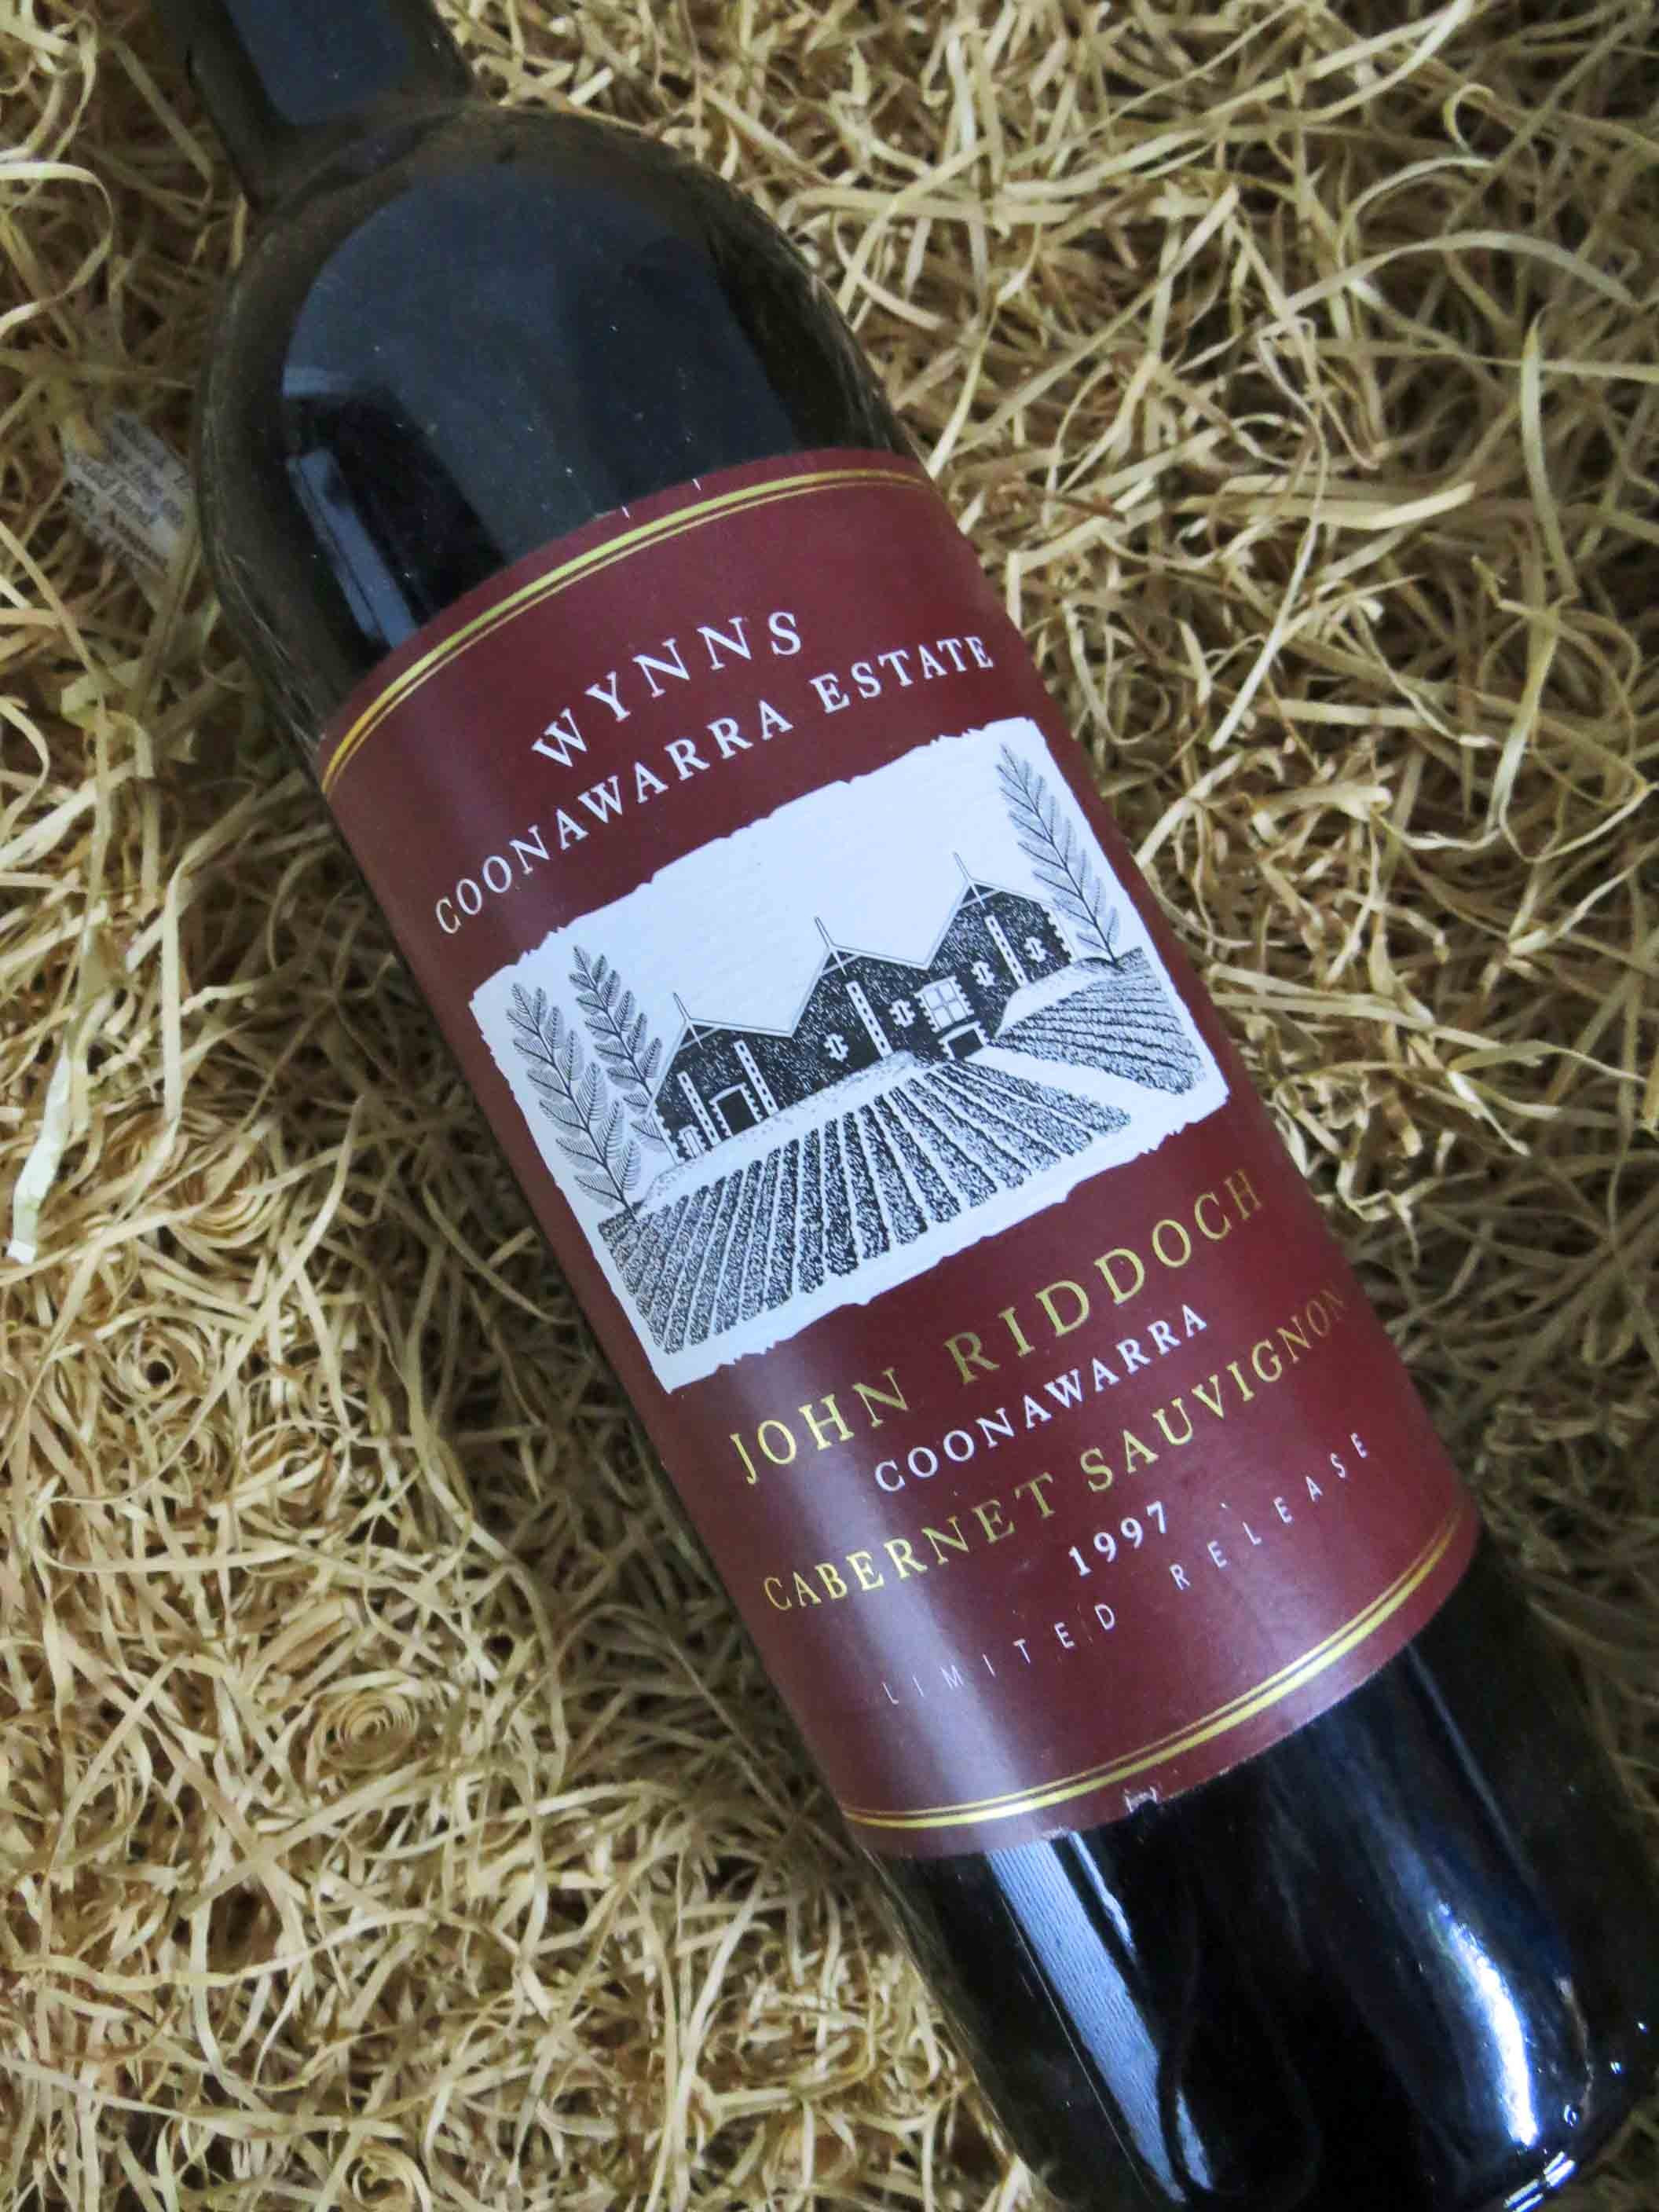 Gọi tên 4 loại rượu vang ngon nhất niềm Nam nước Úc - John Riddoch Cabernet Sauvignon, thương hiệu Wynns, vùng Coonawarra